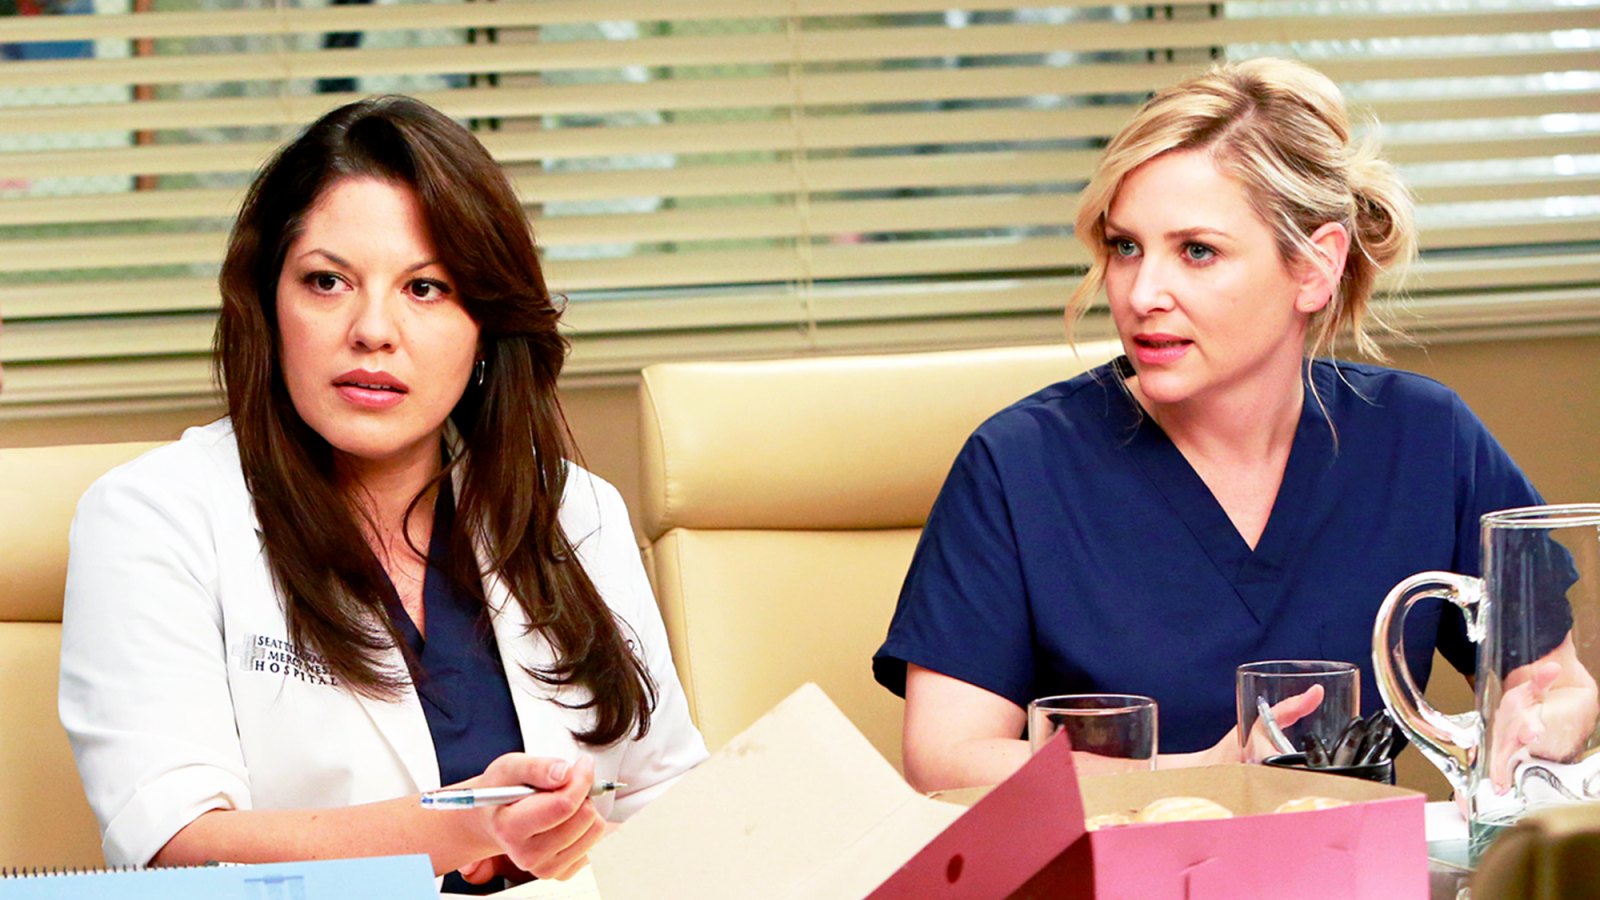 Sara Ramirez and Jessica Capshaw on ‘Grey’s Anatomy‘